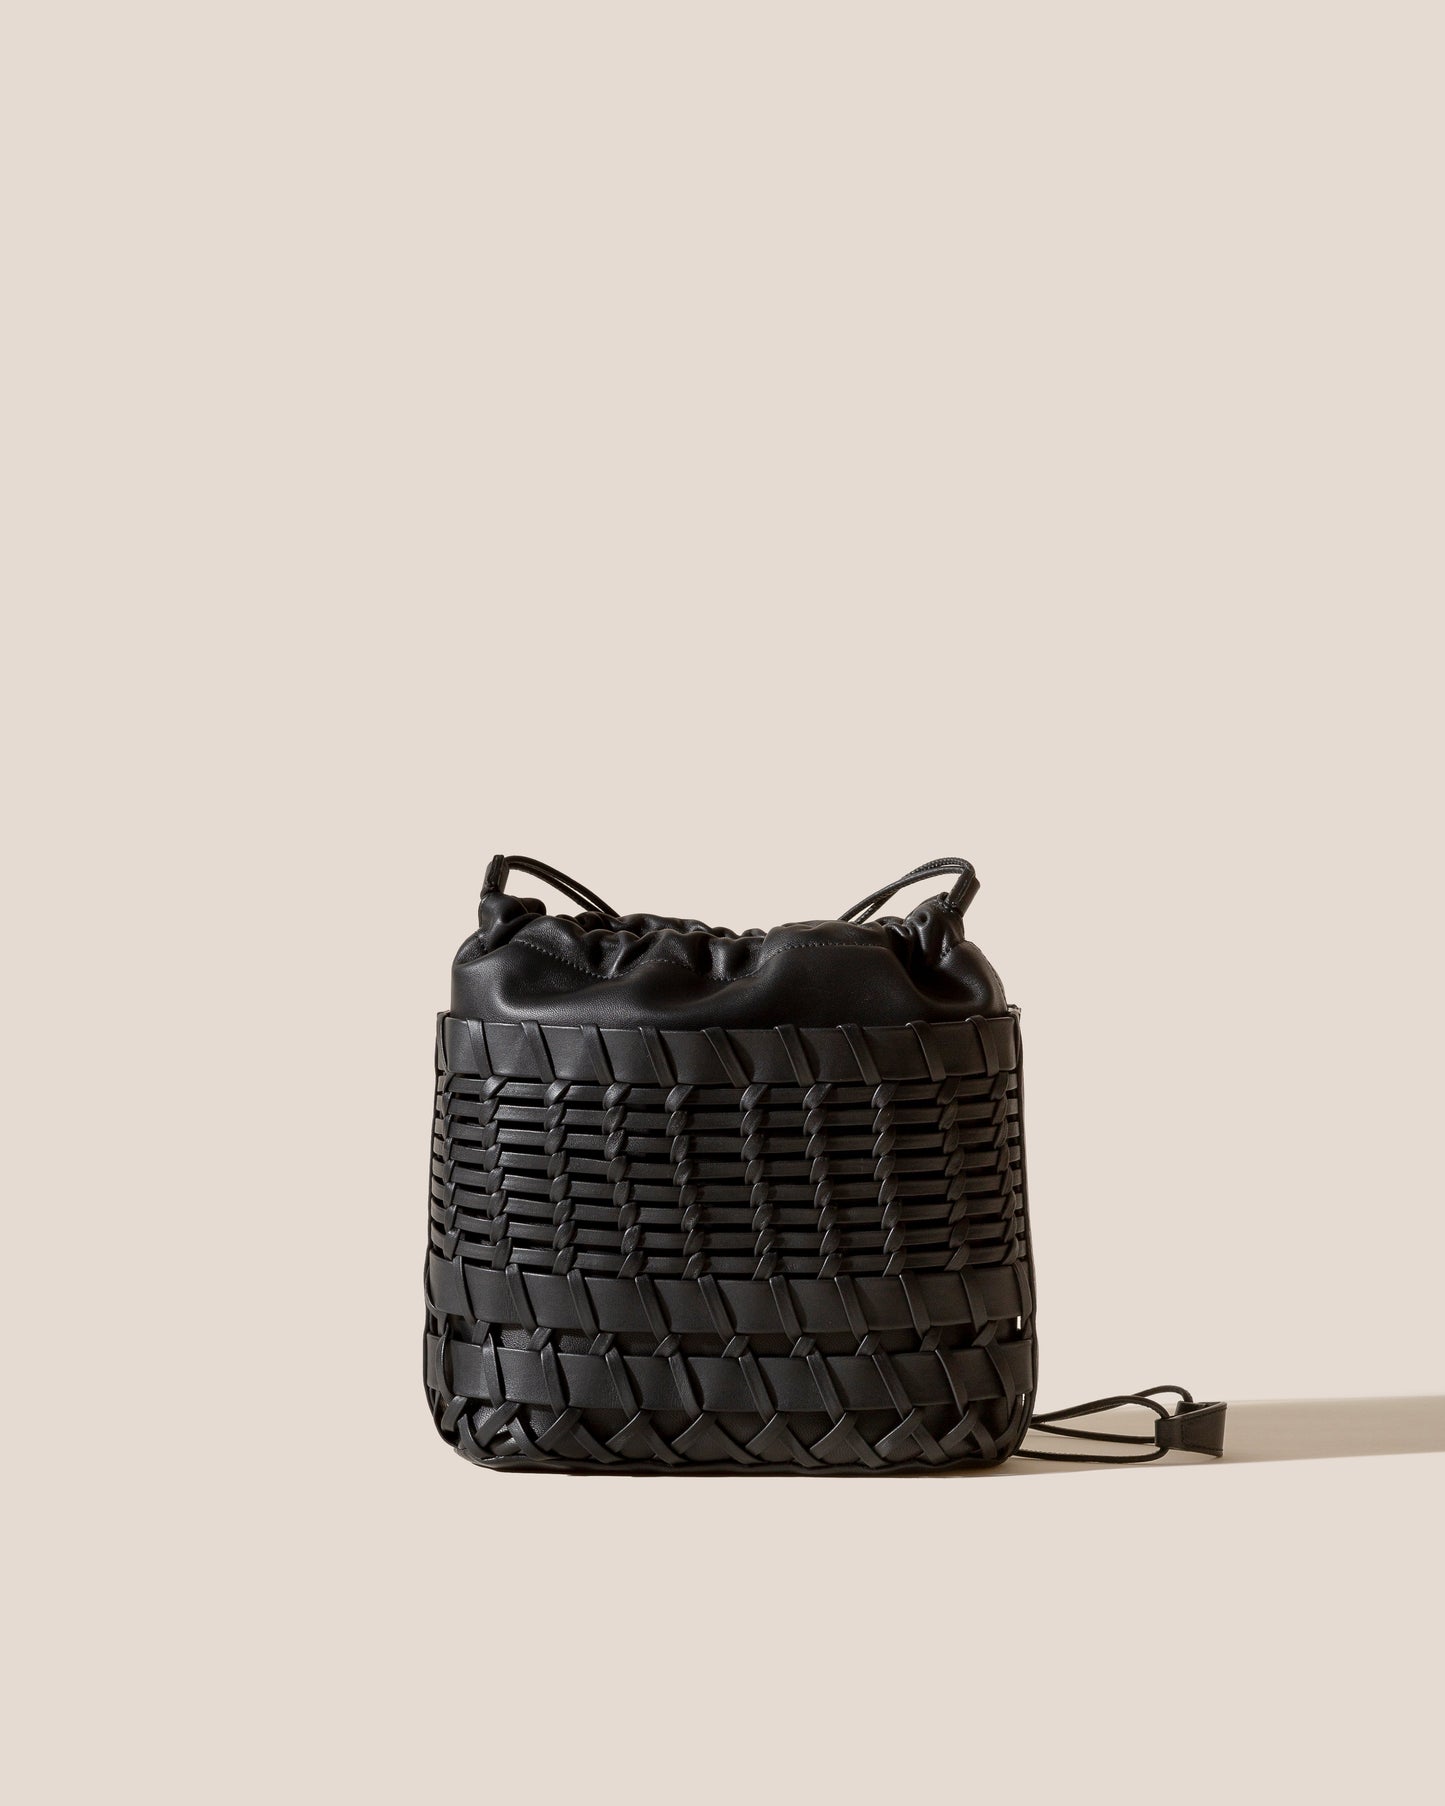 TRENA BUCKET - Interwoven Bucket Crossbody Bag